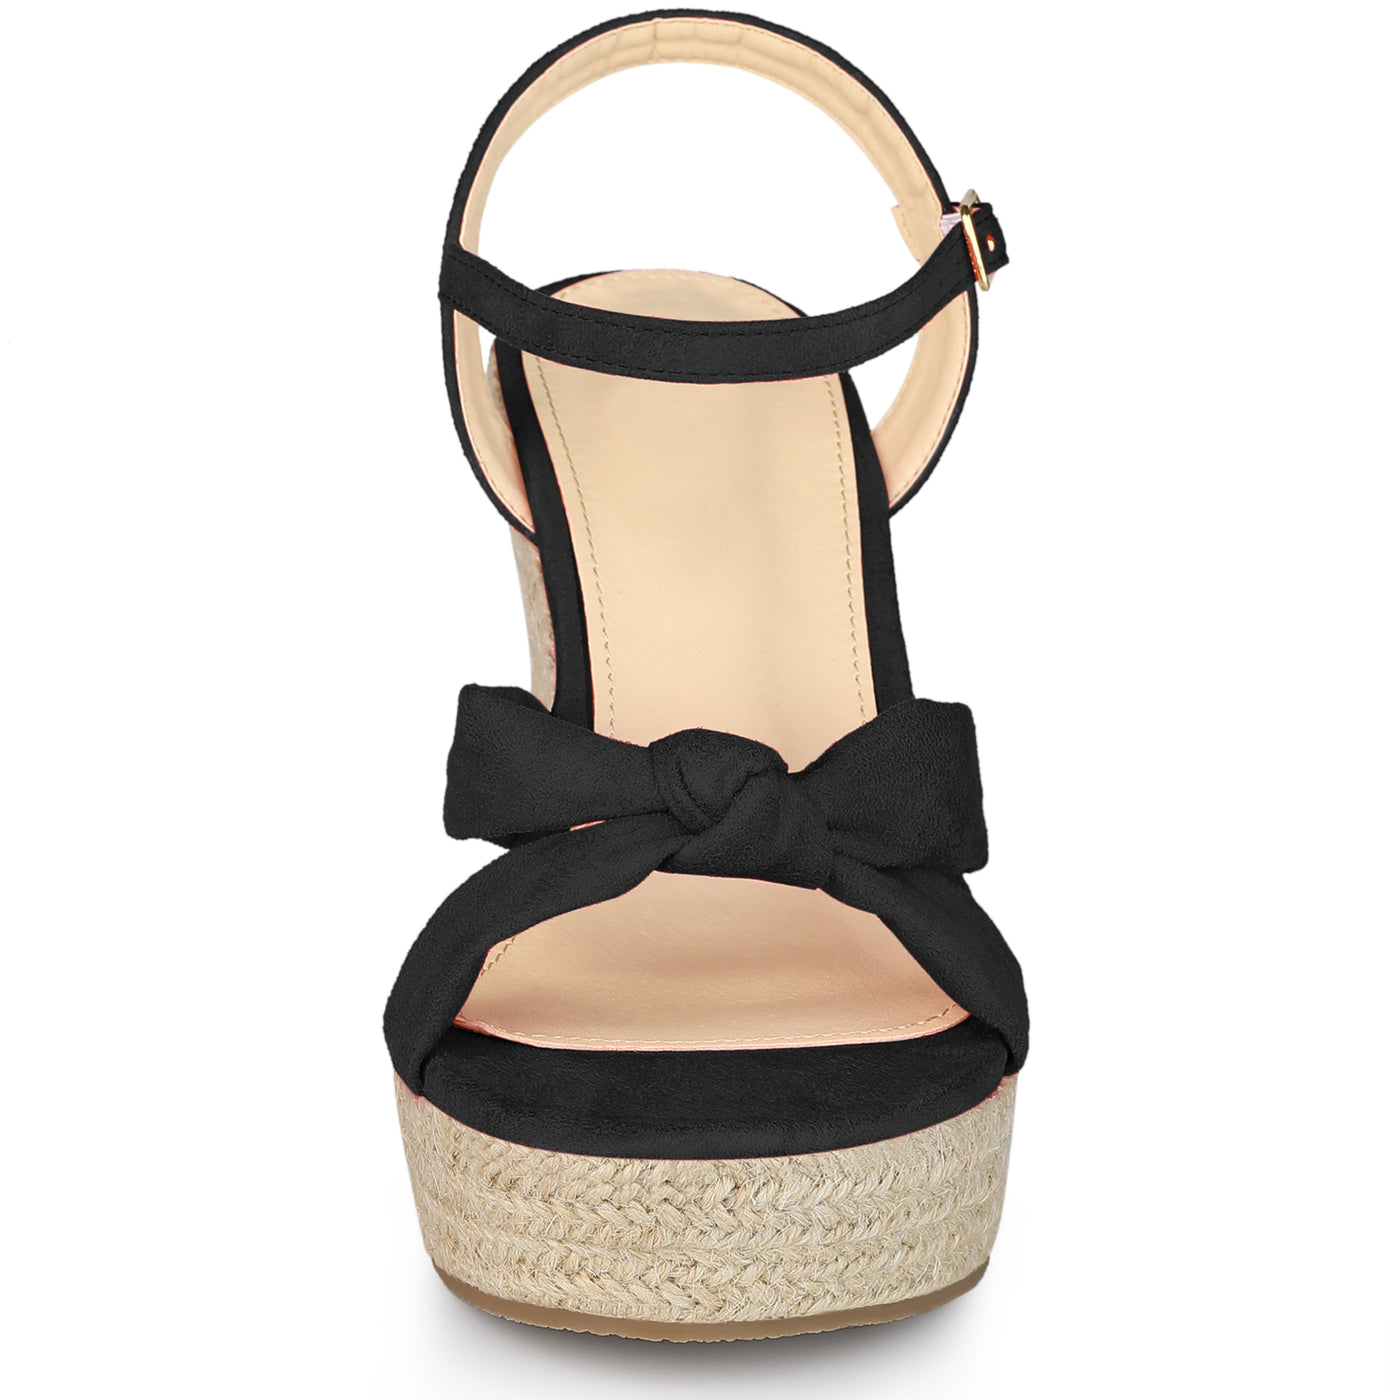 Allegra K Women's Platform Slingback Espadrille Wedge Heel Sandals